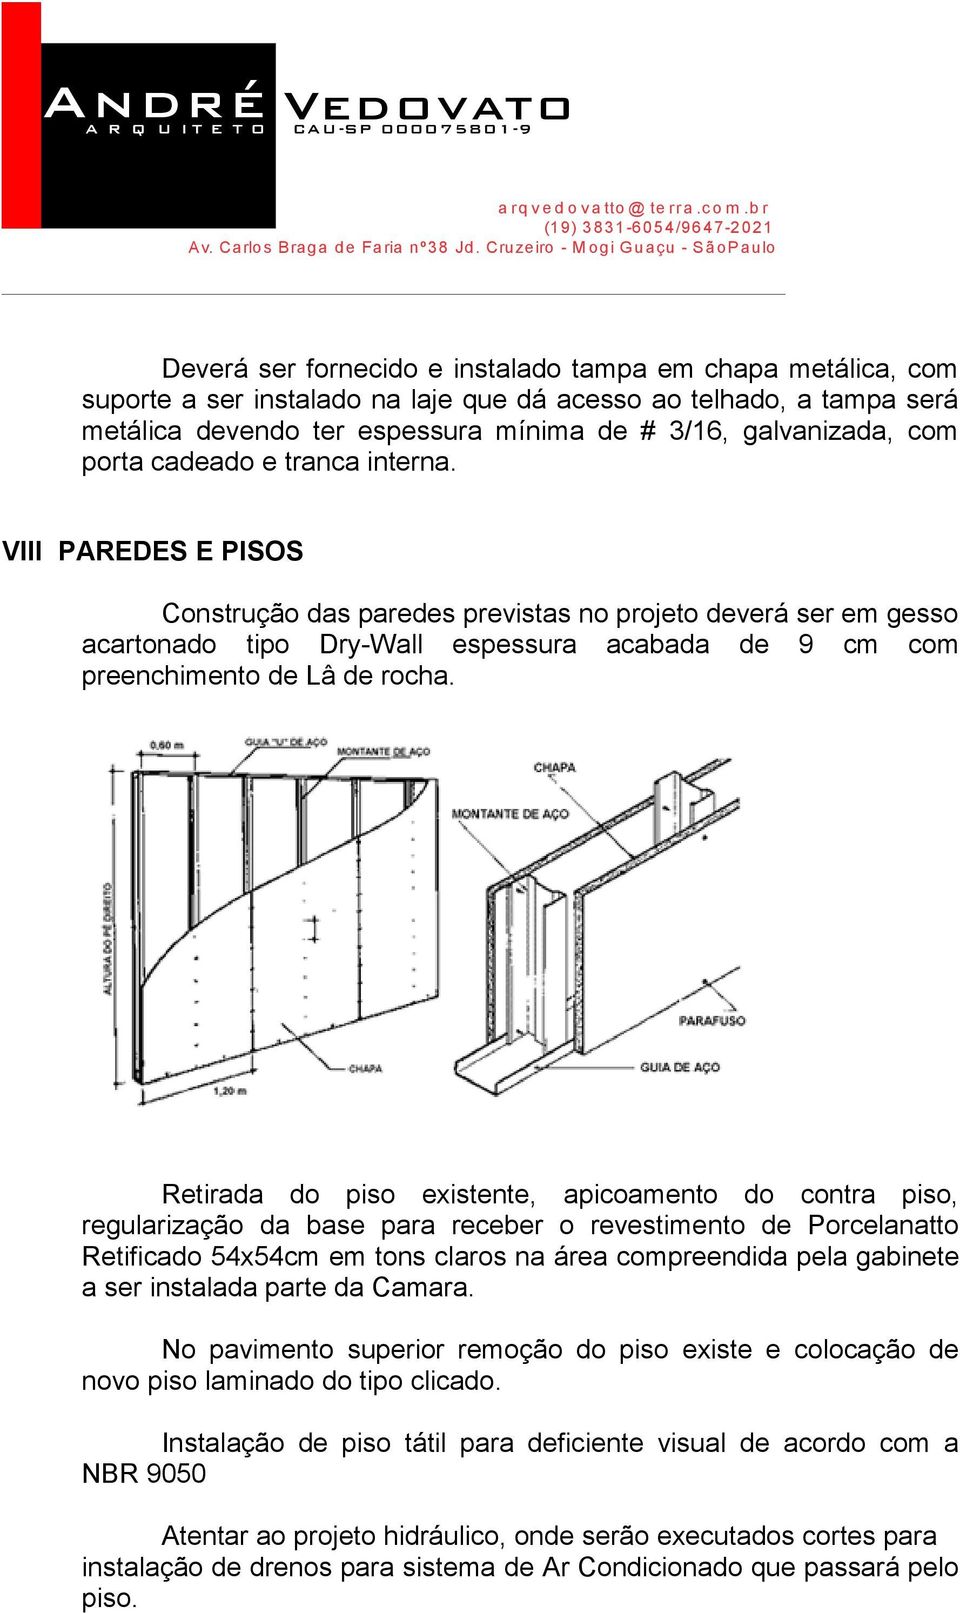 André VIII PAREDES E PISOS Construção das paredes previstas no projeto deverá ser em gesso acartonado tipo Dry-Wall espessura acabada de 9 cm com preenchimento de Lâ de rocha.